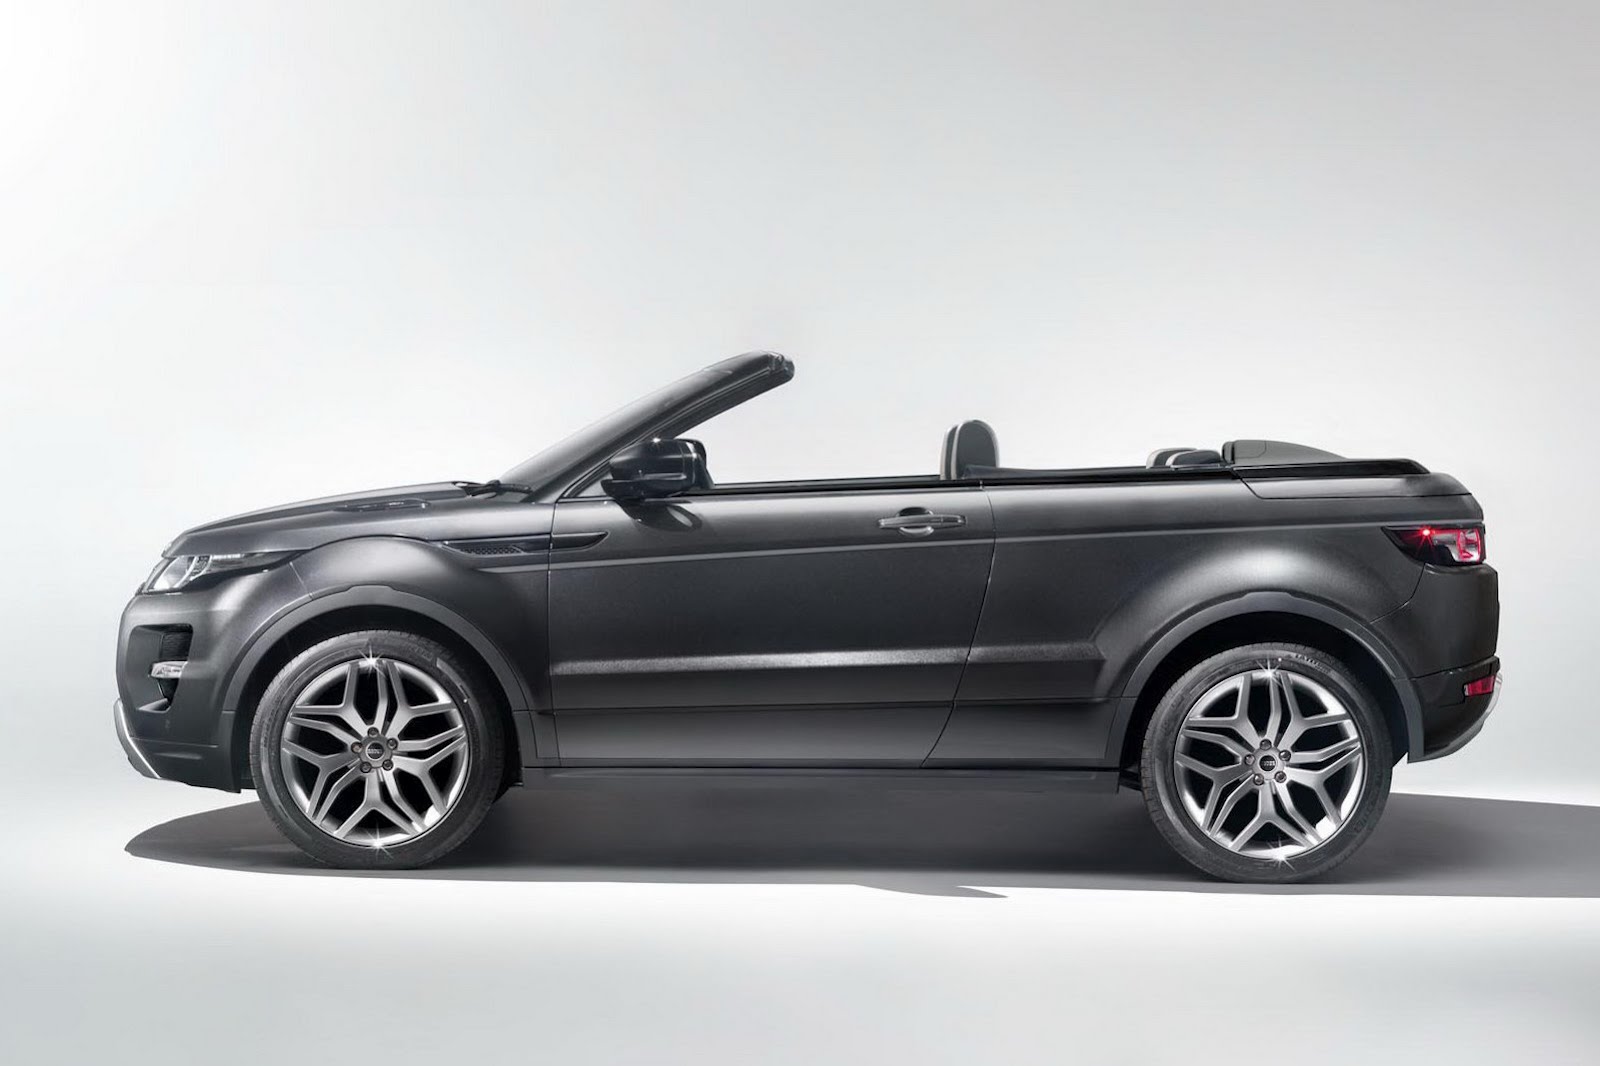 Range Rover Evoque Convertible concept